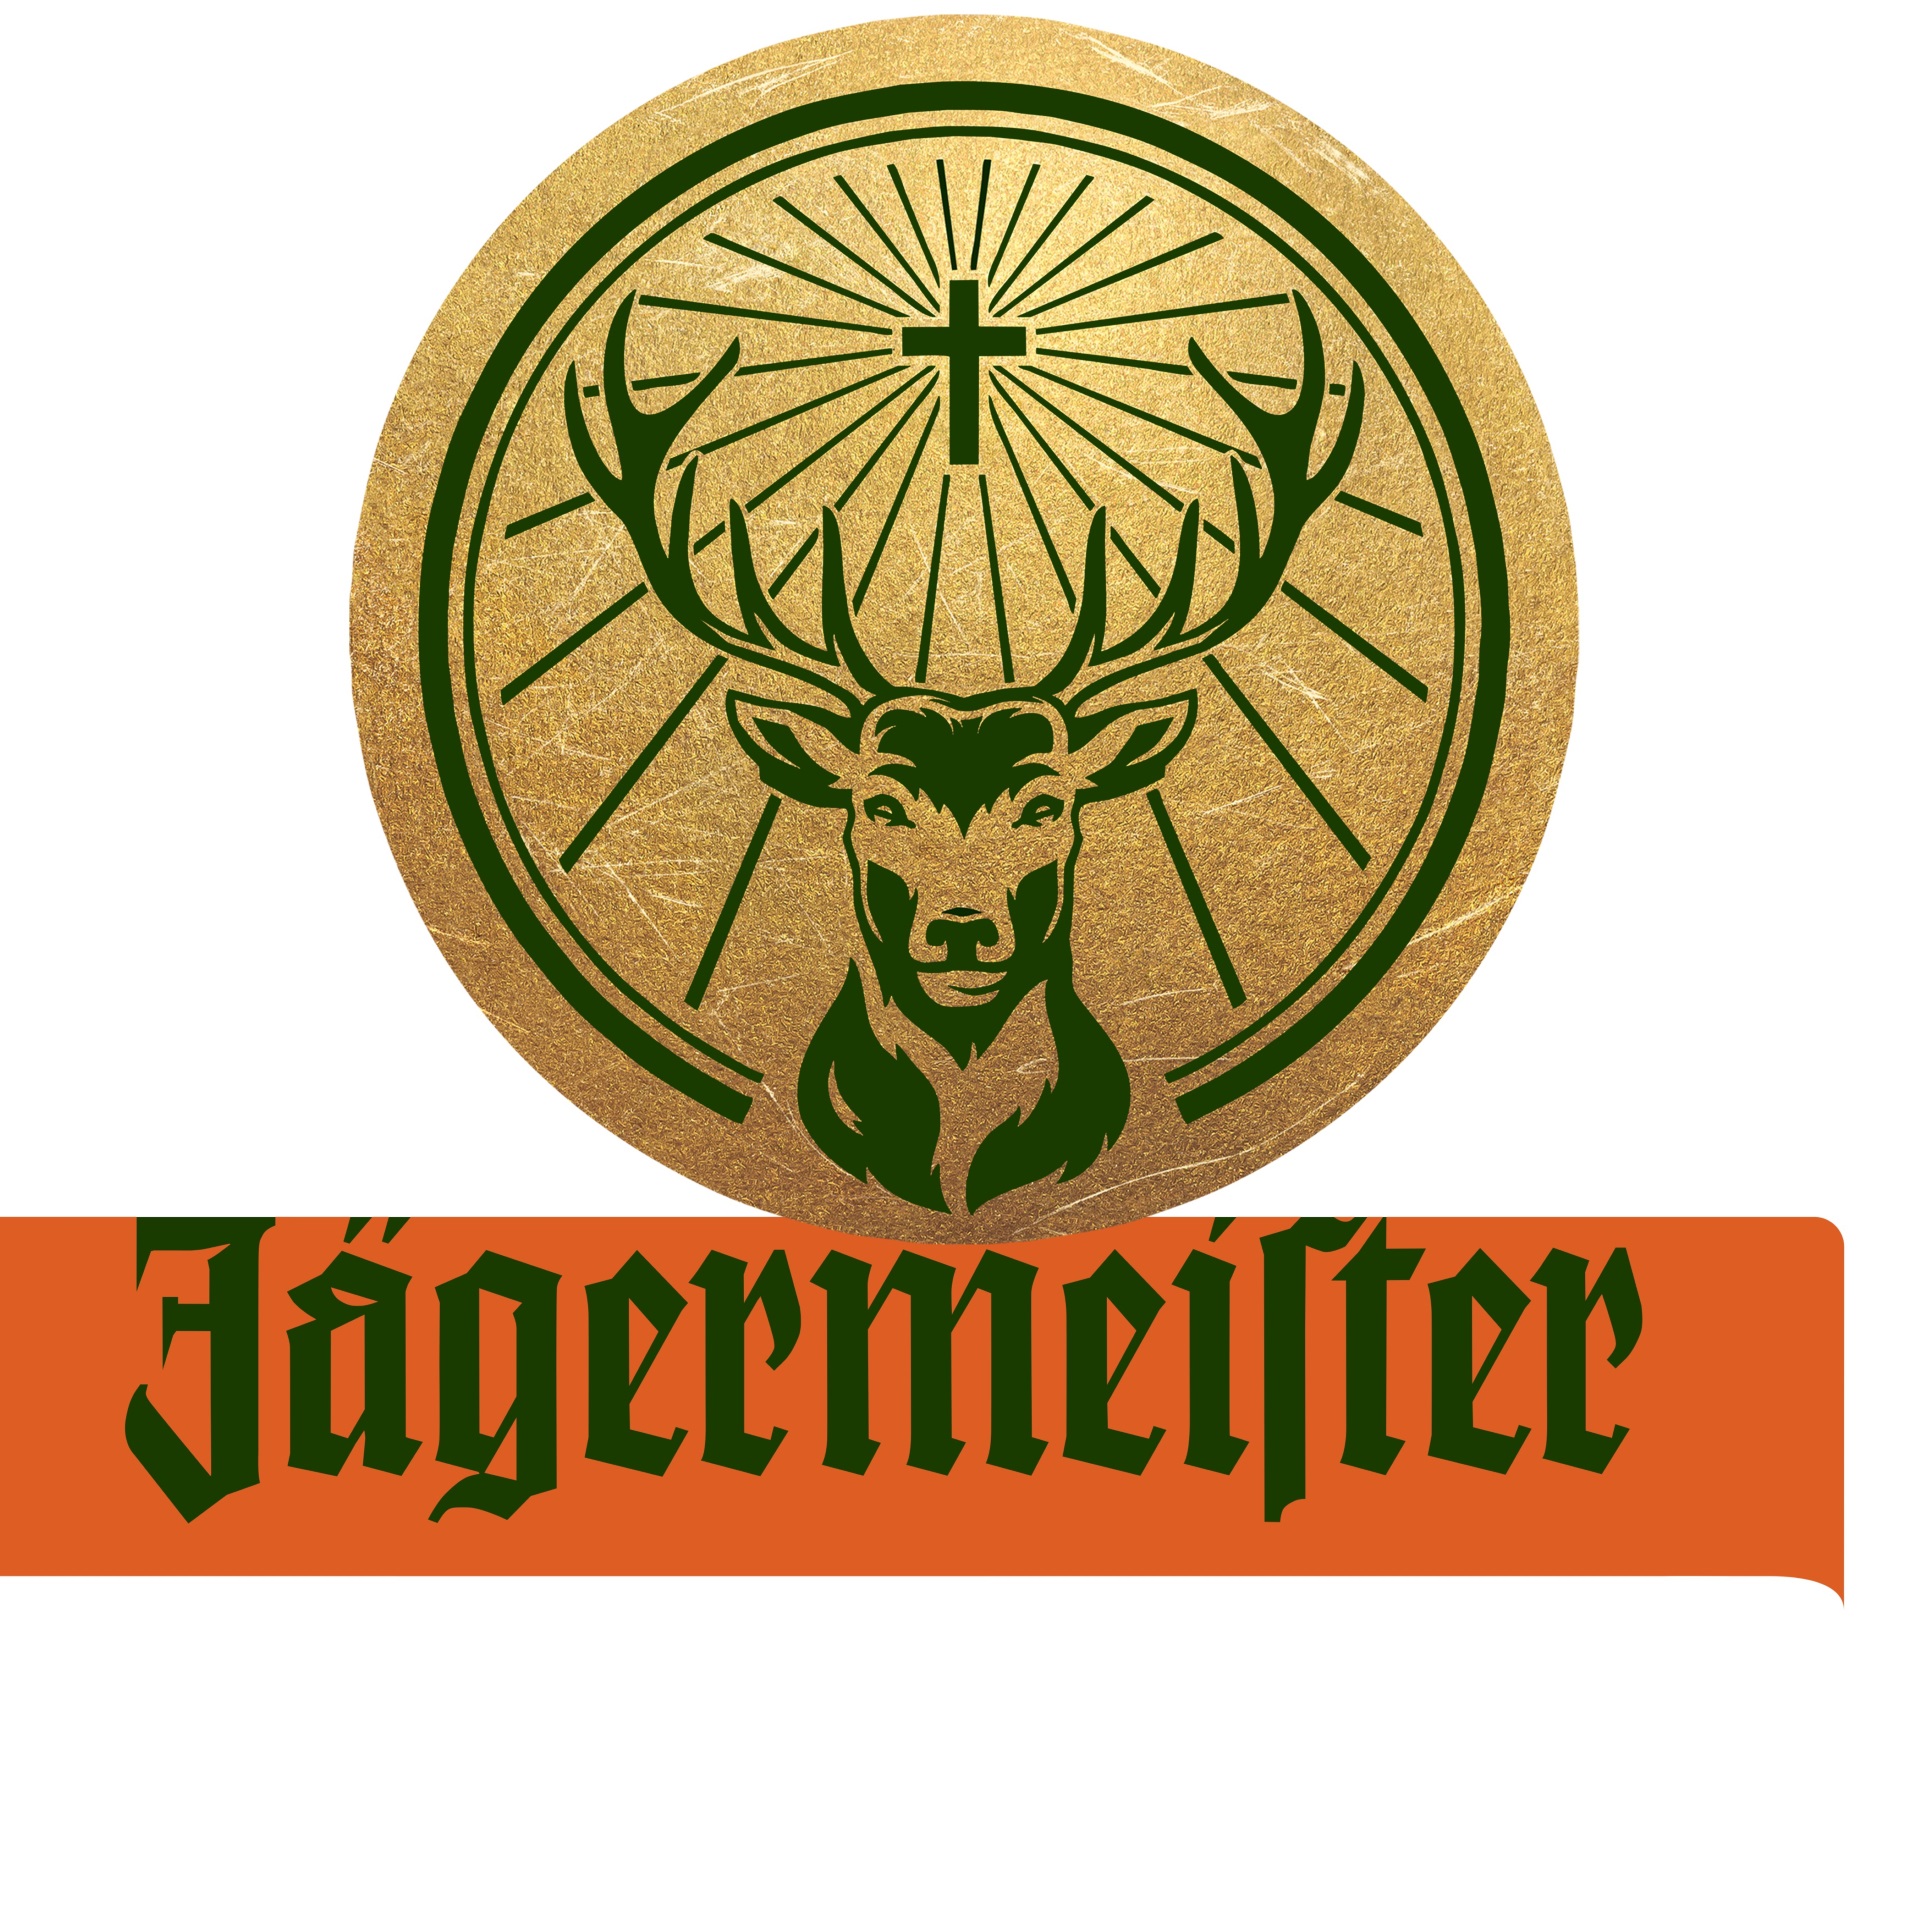 Jägermeister_Logo_sm02